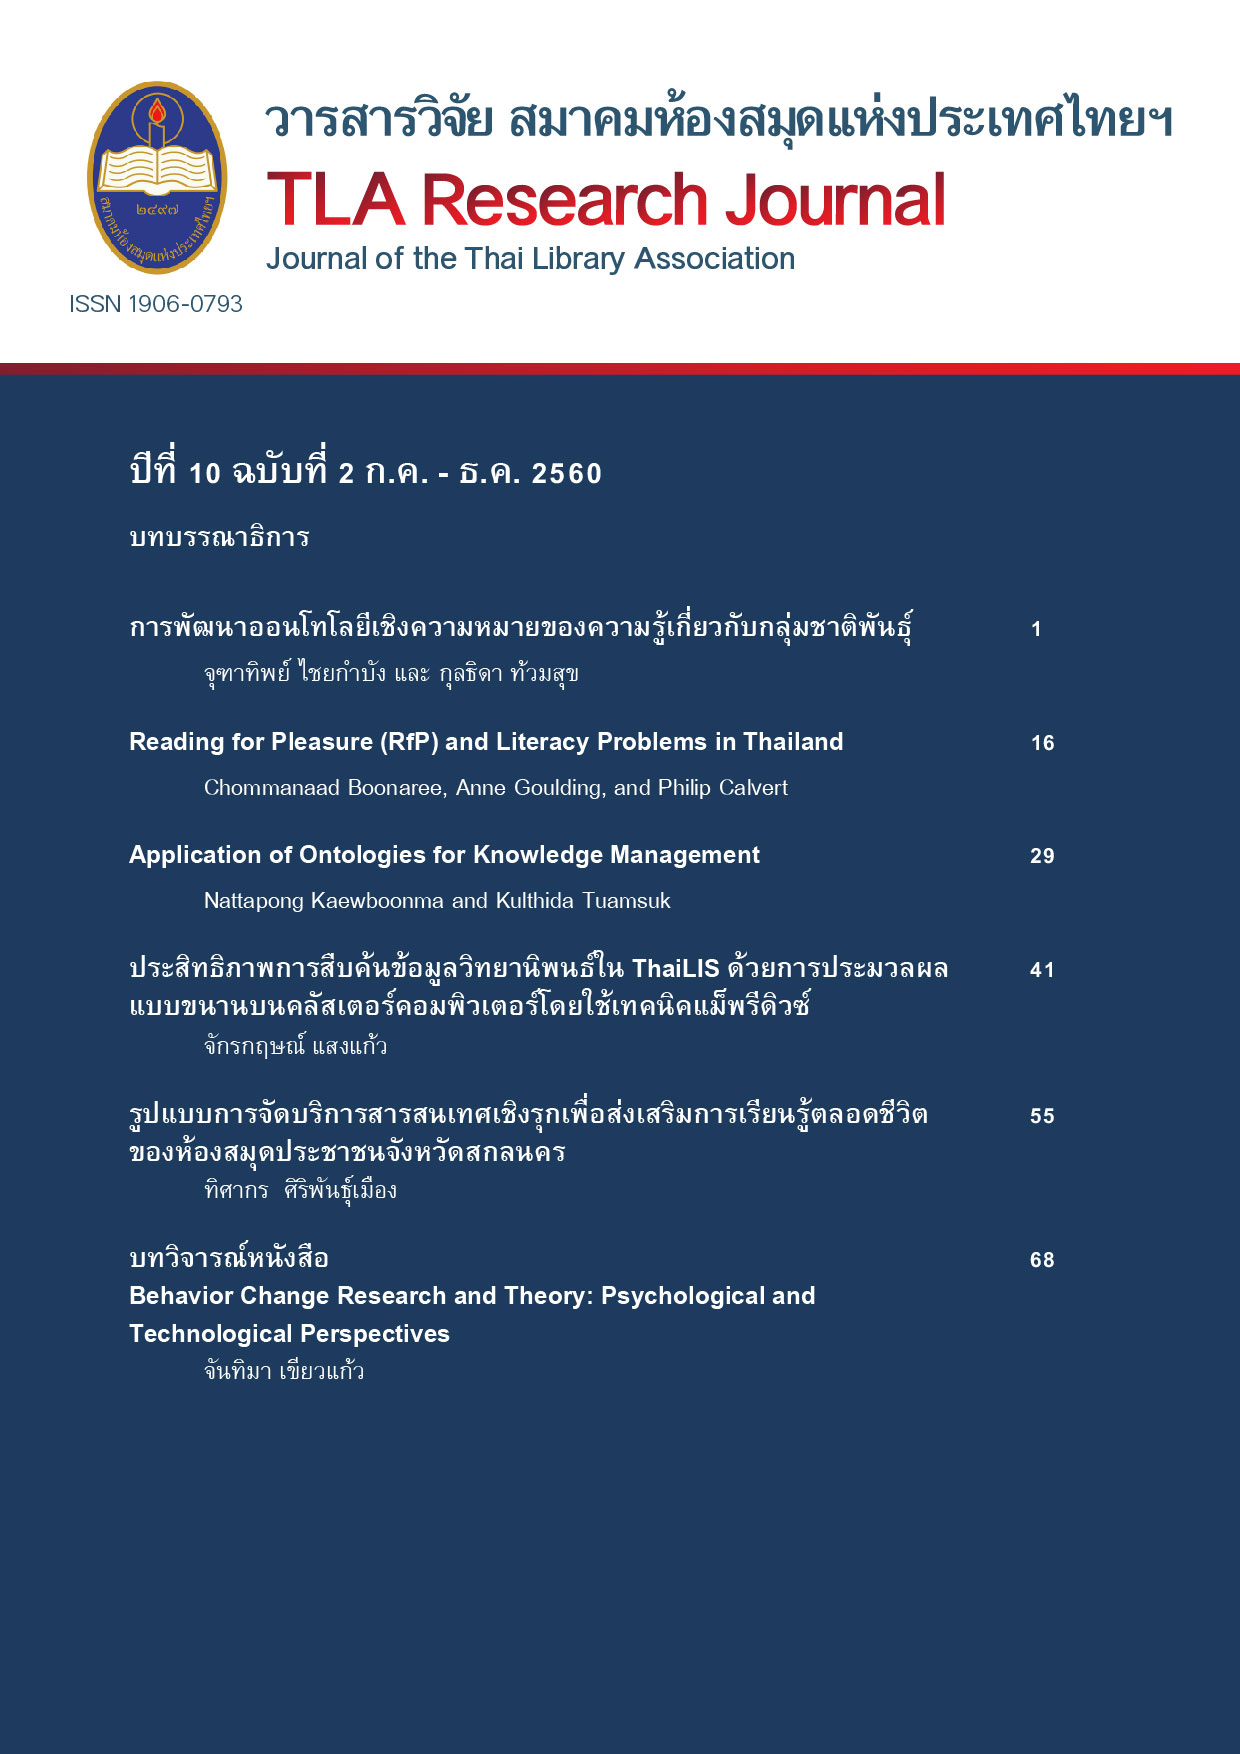 วารสารวิจัย สมาคมห้องสมุดแห่งประเทศไทยฯ ปีที่ 10 ฉบับที่  2 (กรกฎาคม - ธันวาคม) 2560